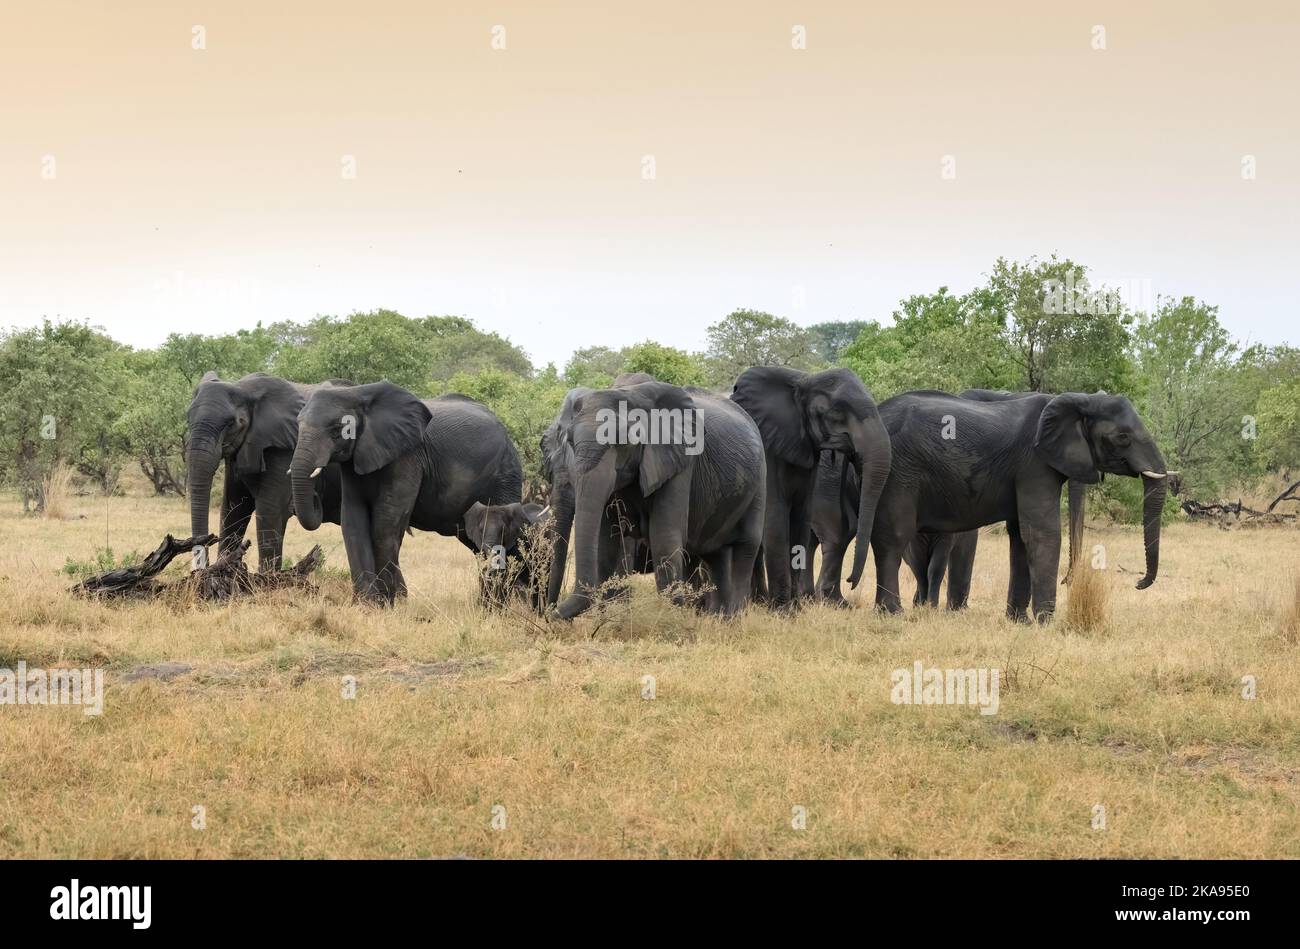 Tierverhalten, afrikanische Elefantenherde, die in einem Schutzkreis um Baby-Elefanten steht, wenn sie bedroht wird, Moremi Wildreservat, Botsuana Afrika Stockfoto